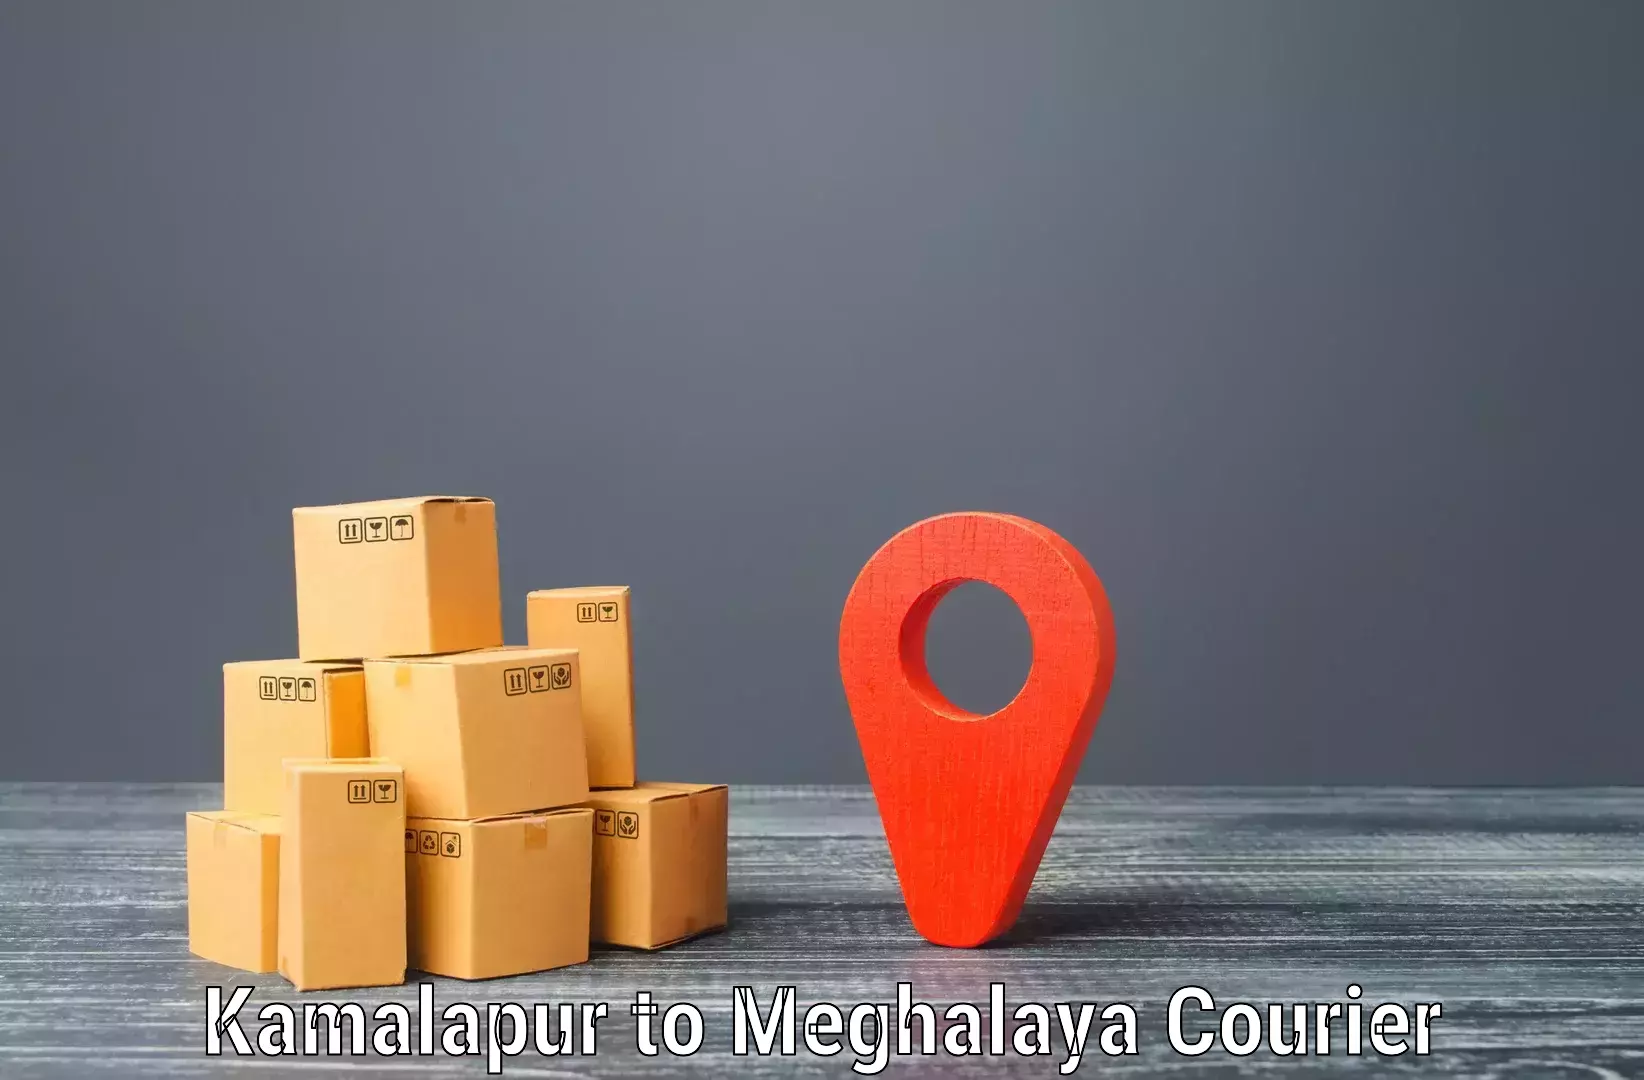 Express logistics Kamalapur to Meghalaya